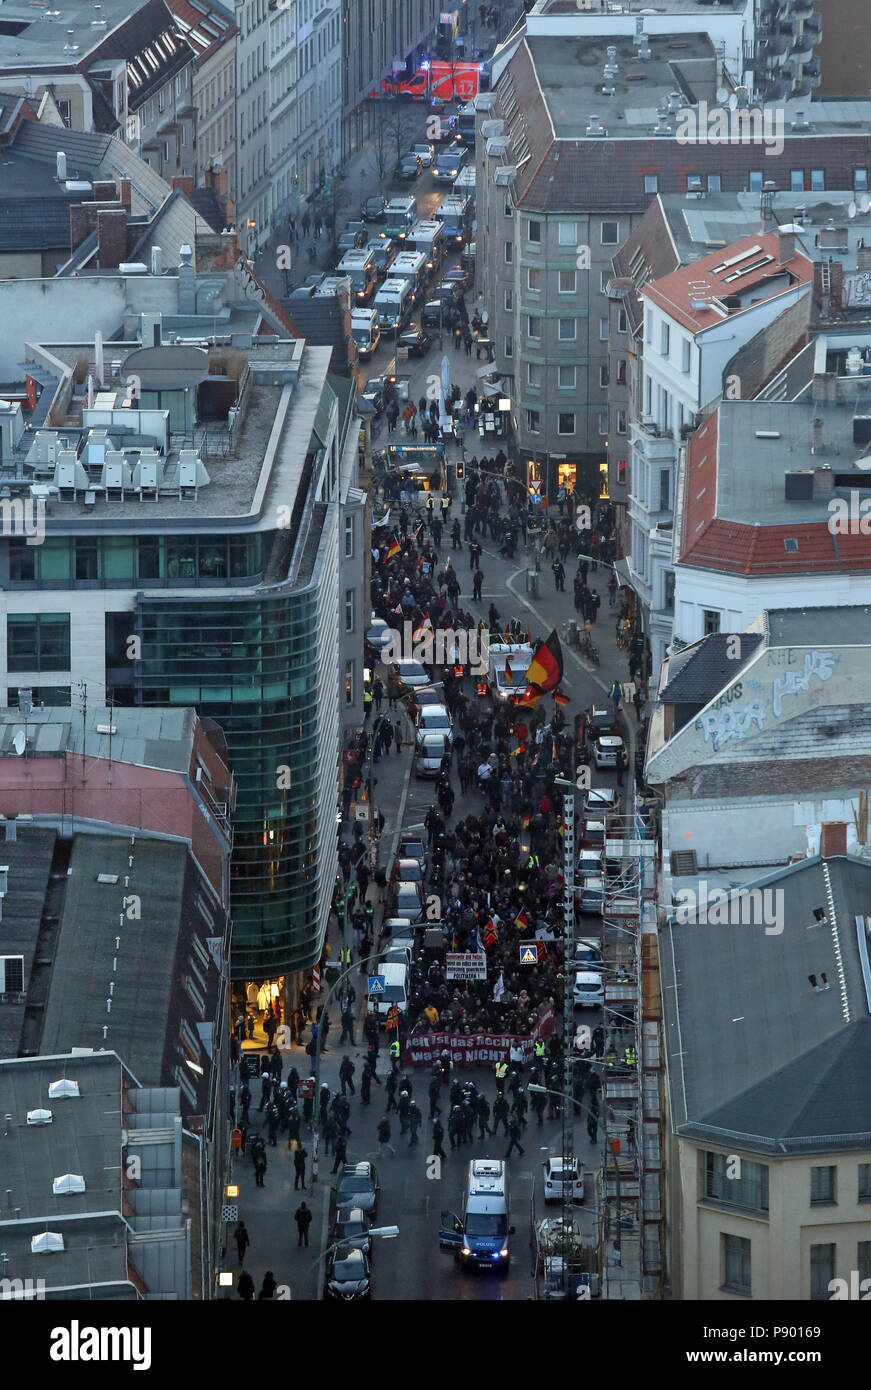 Berlin, Deutschland, Bird's Eye View, Nein zu der Groko demonstration Zug in Muenzstrasse Stockfoto